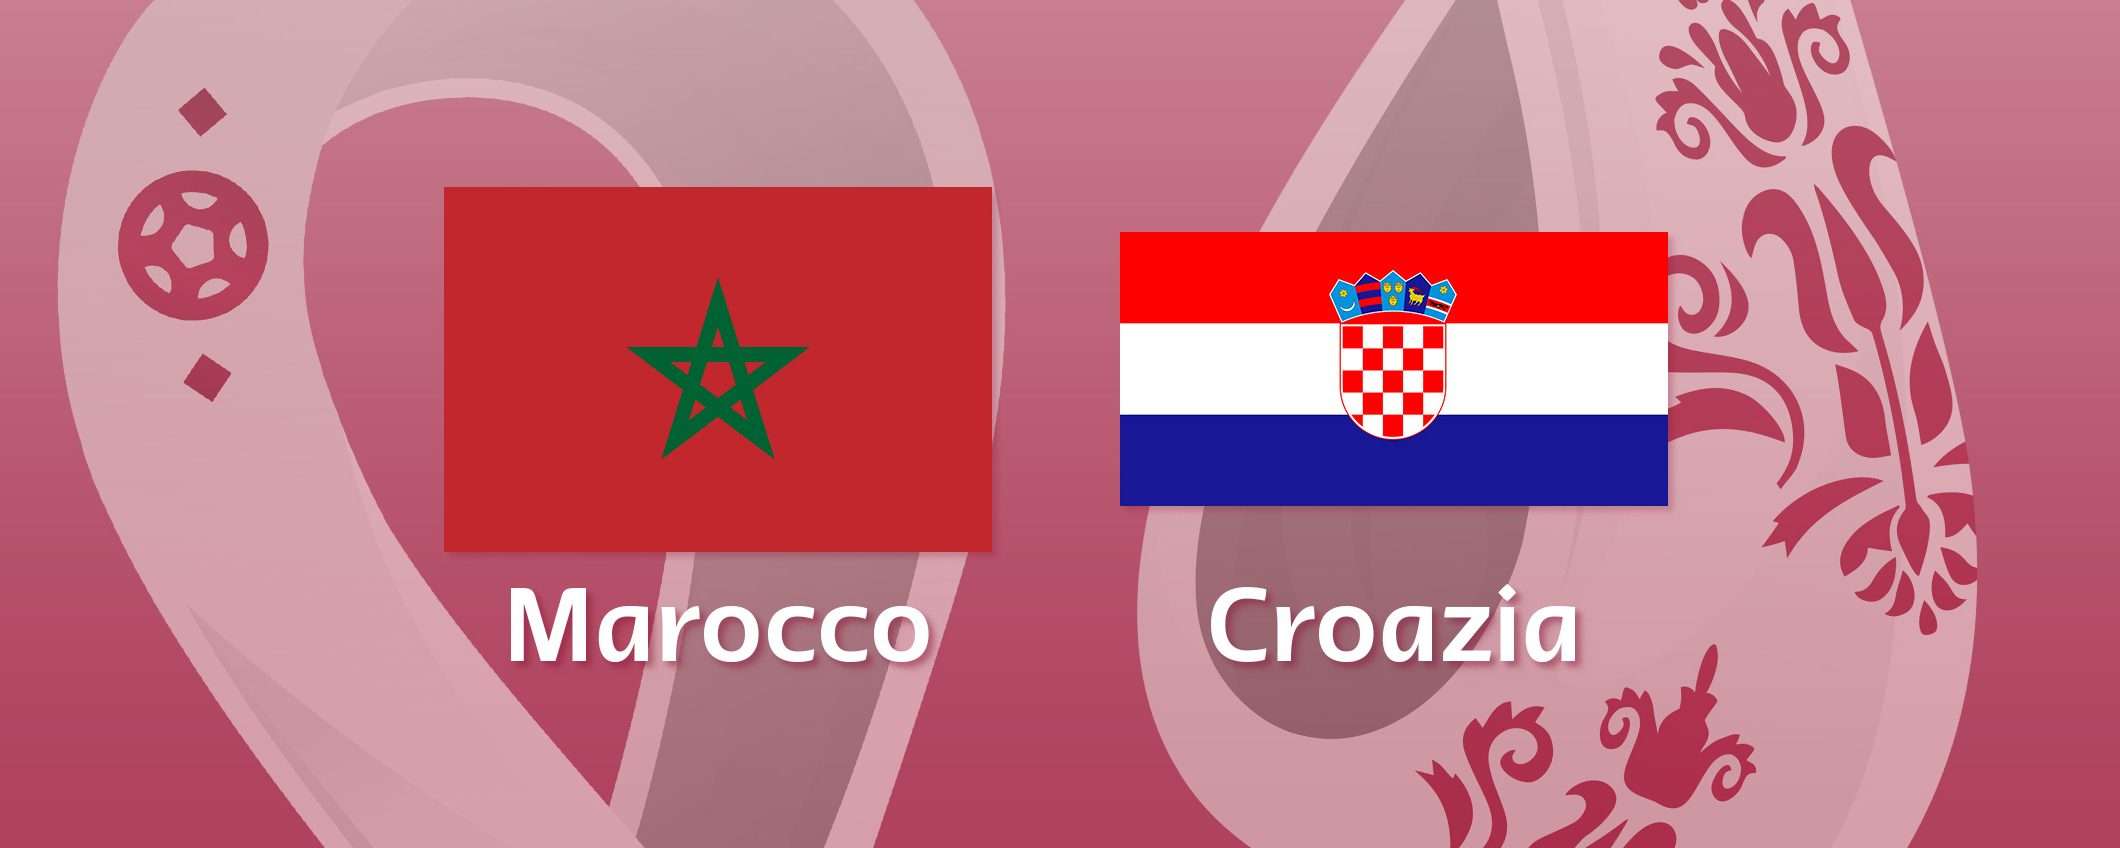 Come vedere Marocco-Croazia in streaming (Mondiali)